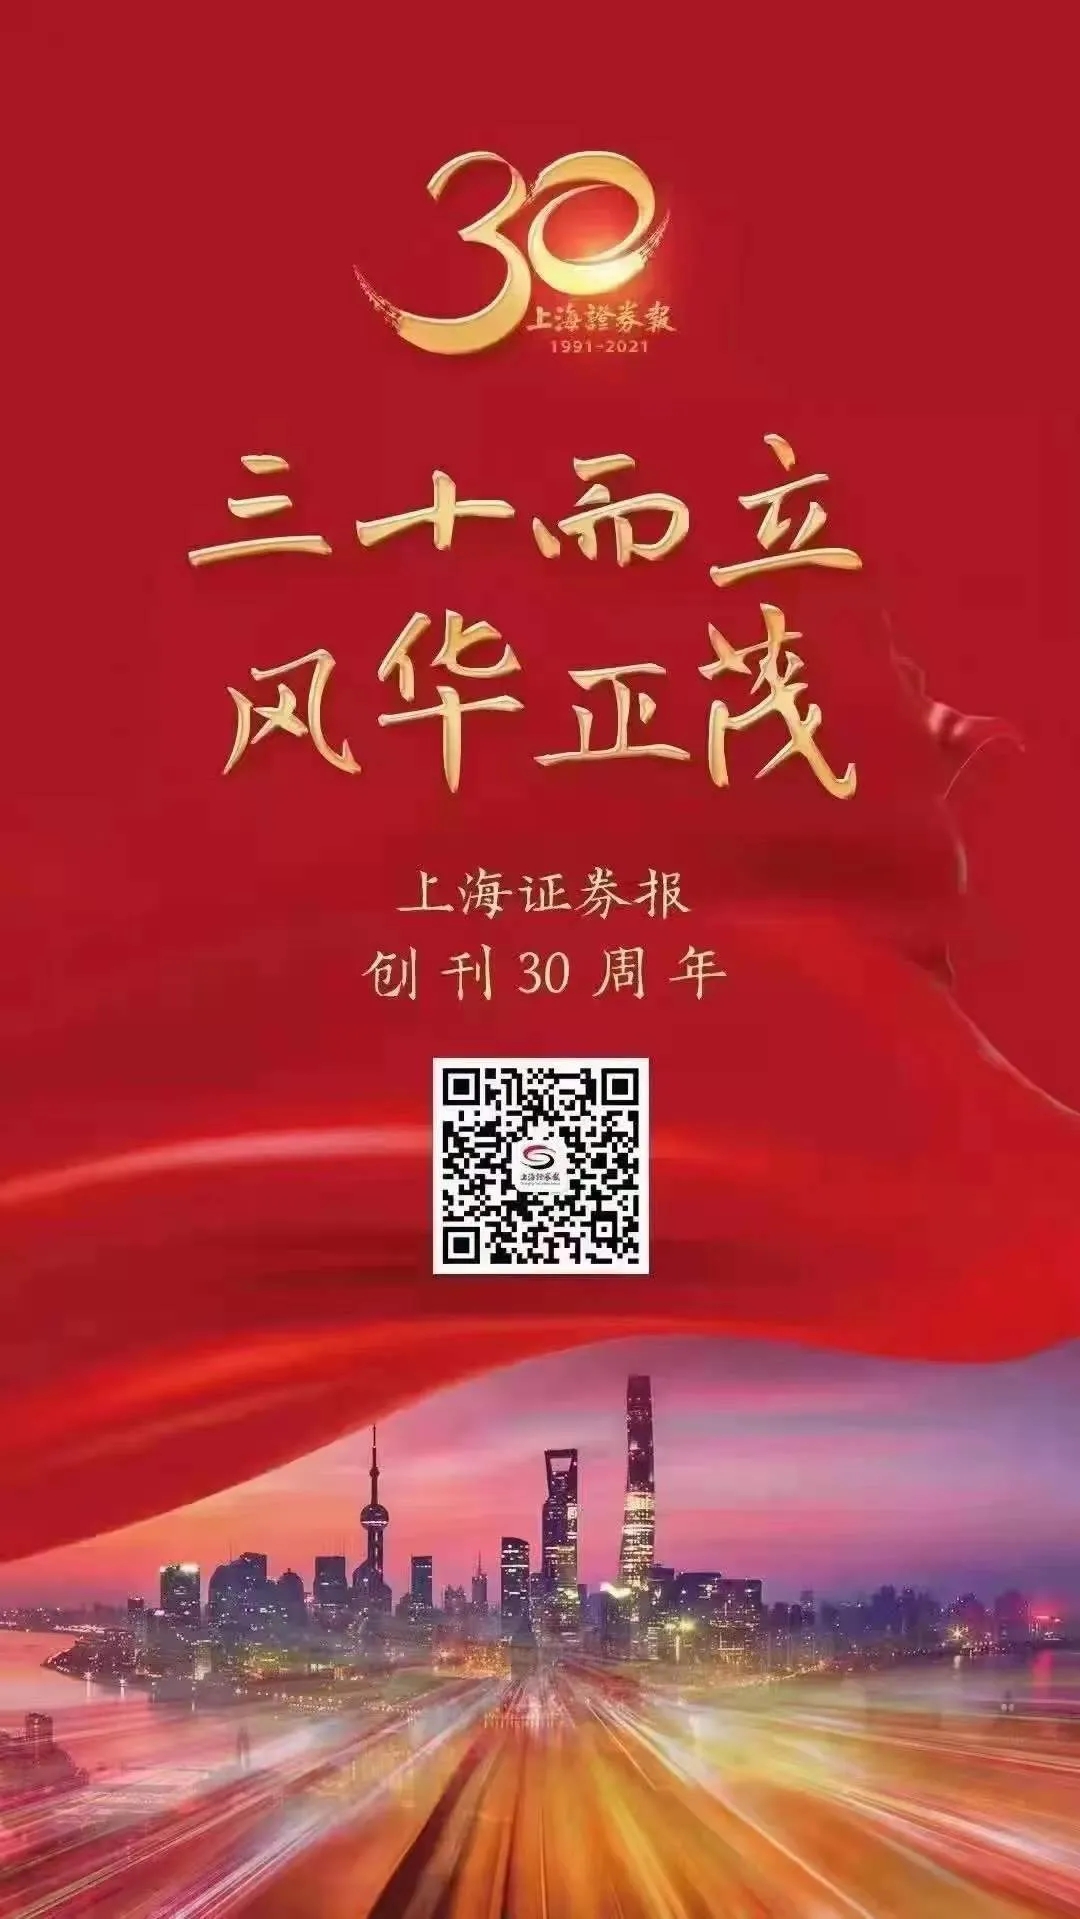 陕西黑猫焦化股份有限公司热烈祝贺上海证券报创刊30周年